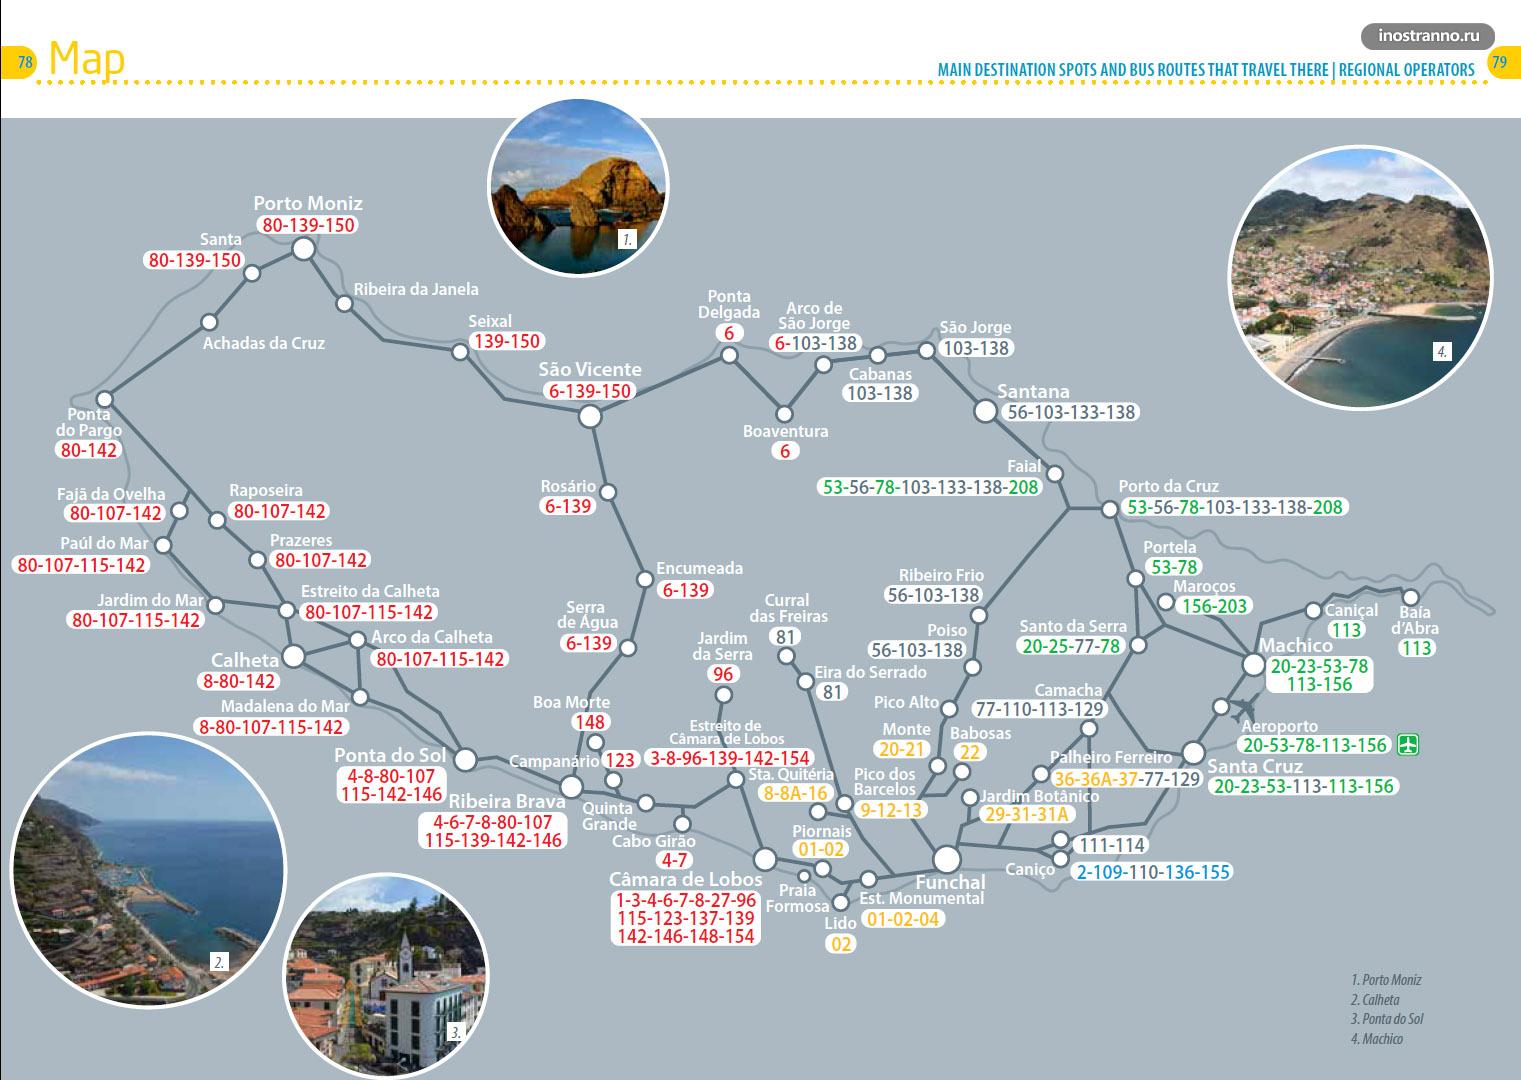 Мадейра карта междугородних автобусных марщрутов